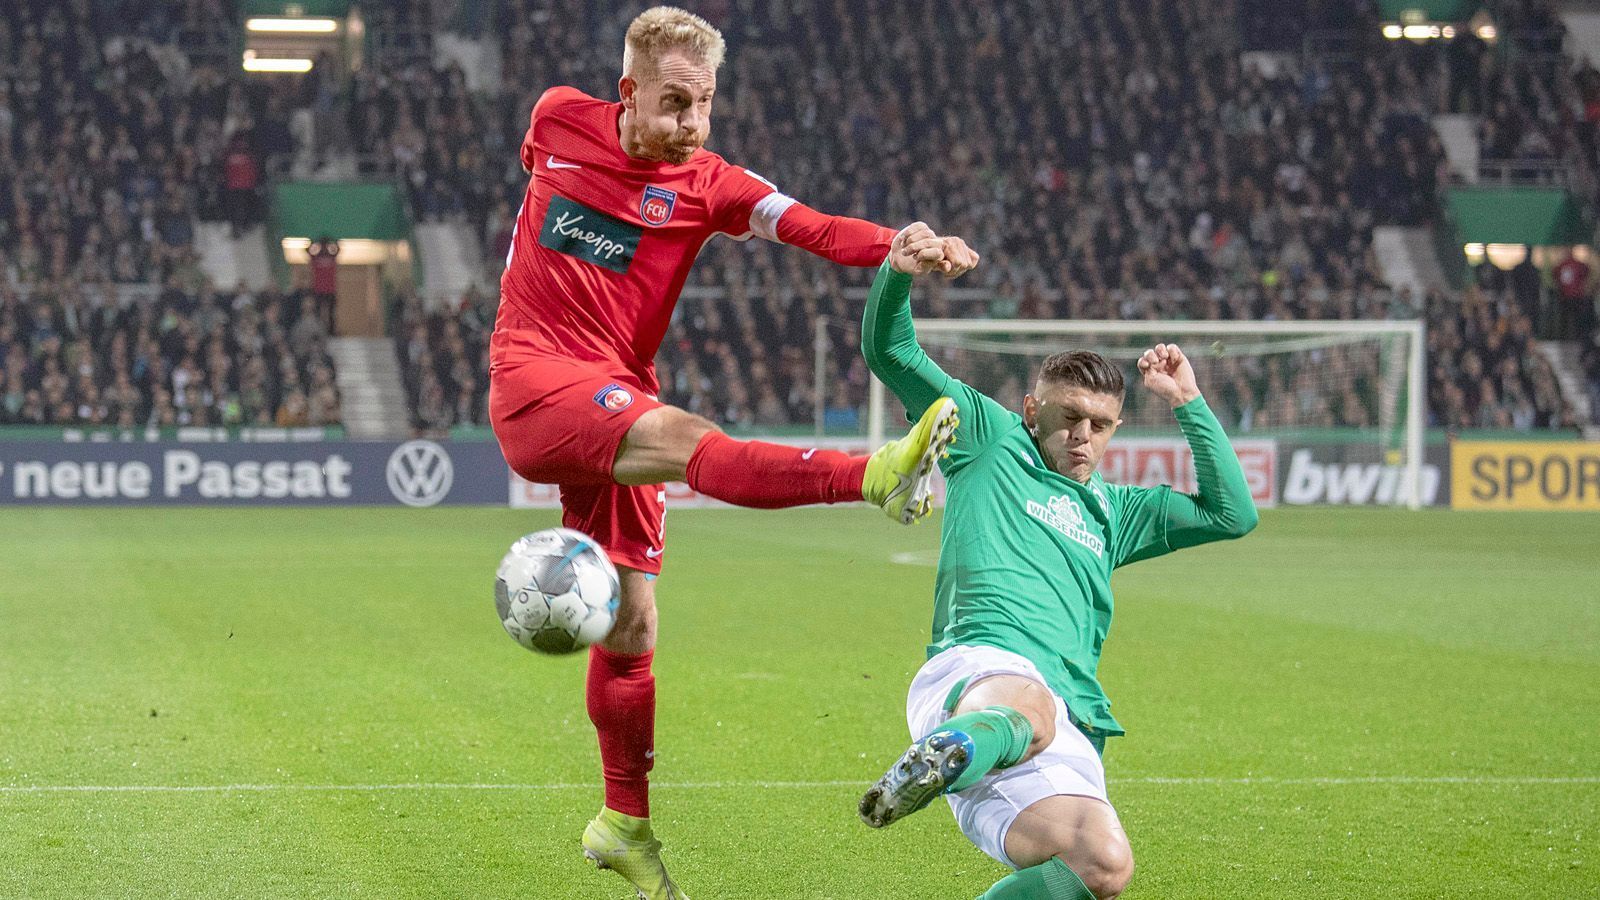 
                <strong>2020: SV Werder Bremen vs. 1. FC Heidenheim</strong><br>
                Mit einem furiosen 6:1 setzte sich der eigentlich schon abgeschriebene SV Werder Bremen am letzten Spieltag gegen den 1. FC Köln durch und rettete sich noch vor Fortuna Düsseldorf in die Relegation. Dort wartete der starke 1. FC Heidenheim, der den Hamburger SV hinter sich ließ. Im Hinspiel war es ein eher träges 0:0 im Weserstadion, alle Aufregung spielte sich im Rückspiel ab. Die Bremer gingen zwei Mal in Führung, die Heidenheimer konnten zwei Mal ausgleichen. Am Ende jubelte Werder aufgrund der Auswärtstor-Regel und blieb in der Bundesliga.
              